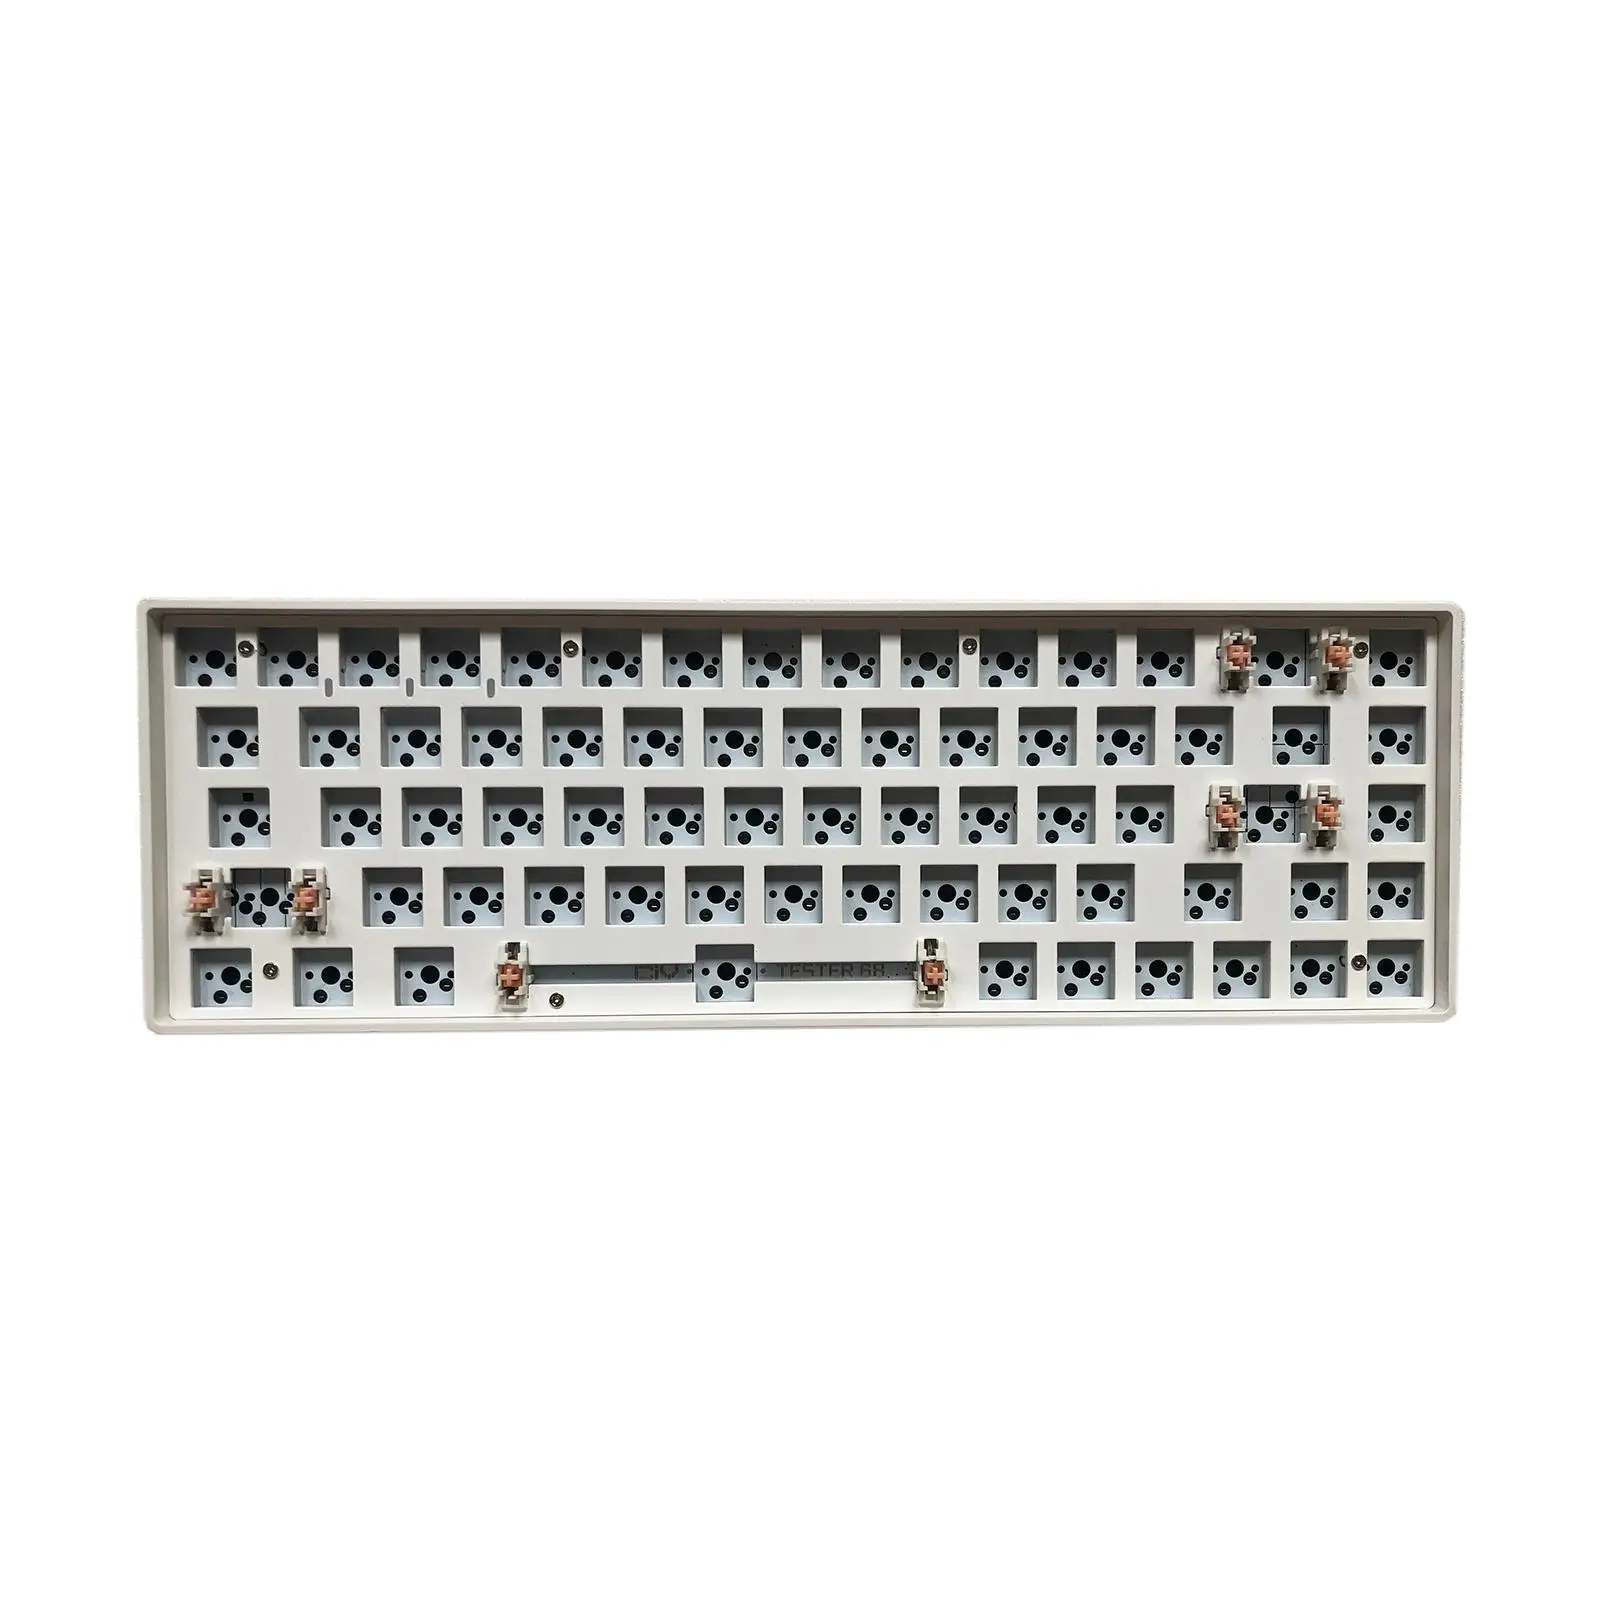 68 Keys Modular Mechanical Keyboard Compact Keyboard White DIY Kit Gaming Hot-Swap Wireless 2.4G Keyboard for Windows Laptop